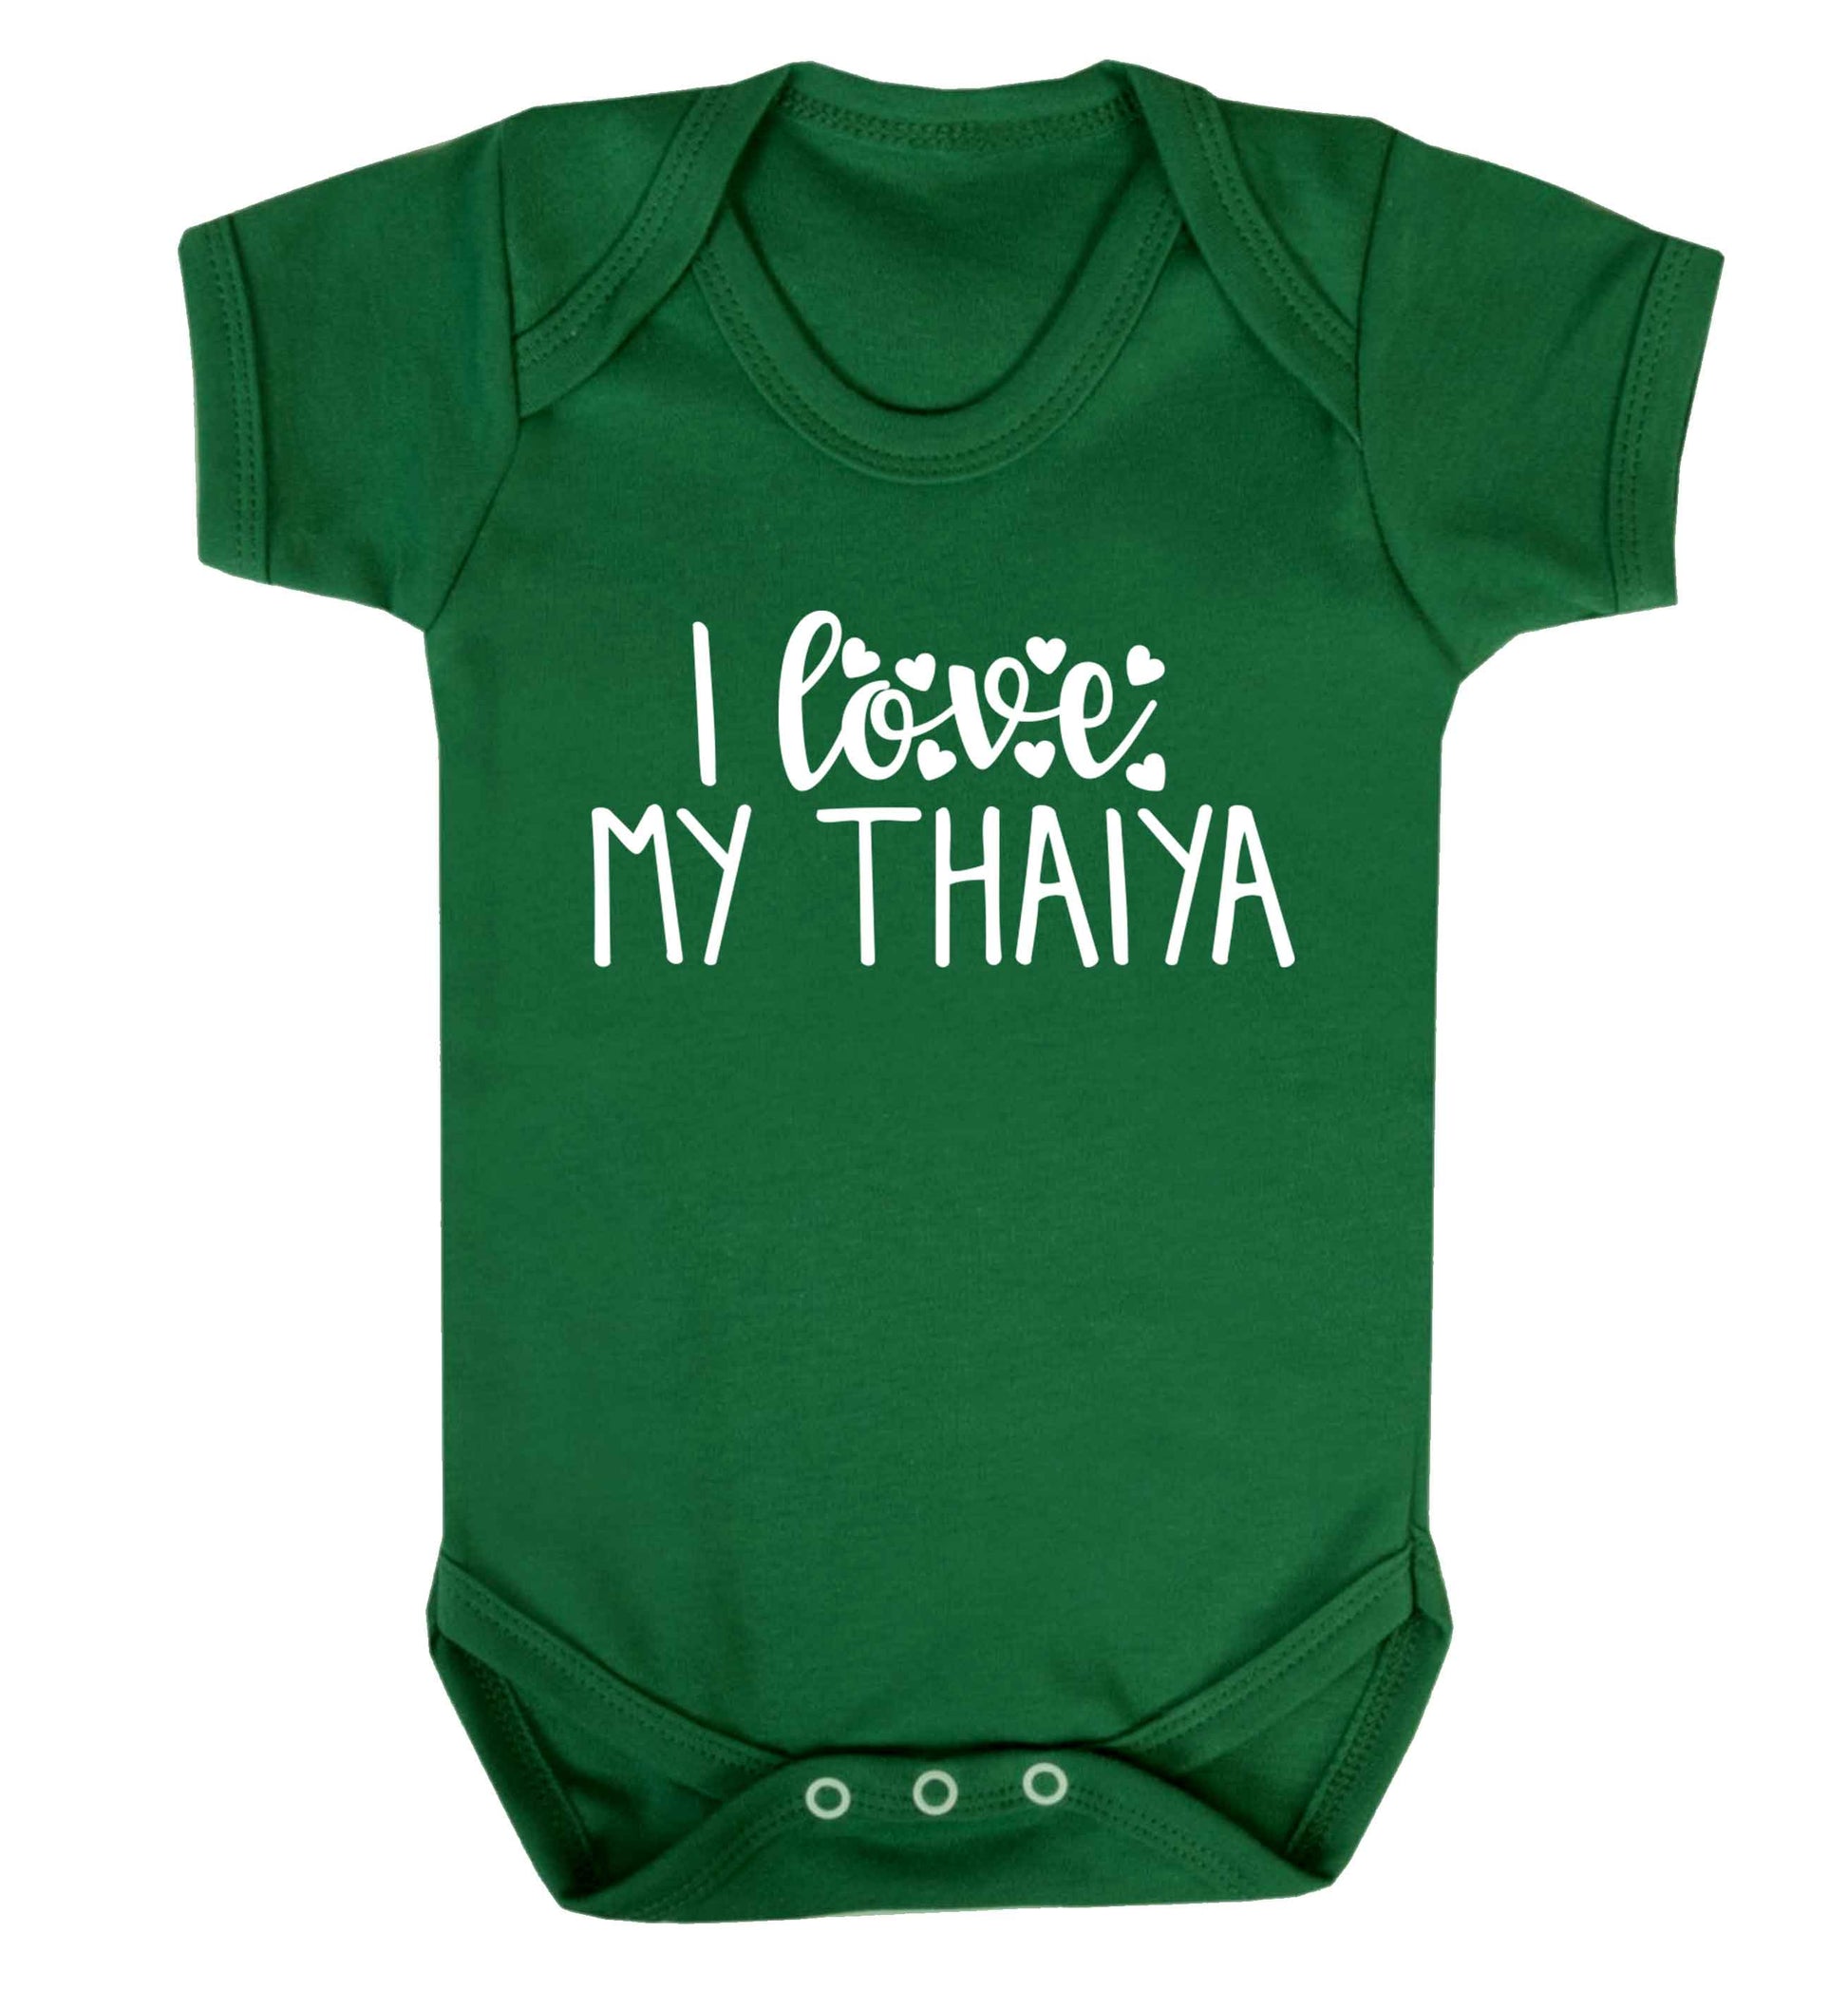 I love my thaiya Baby Vest green 18-24 months